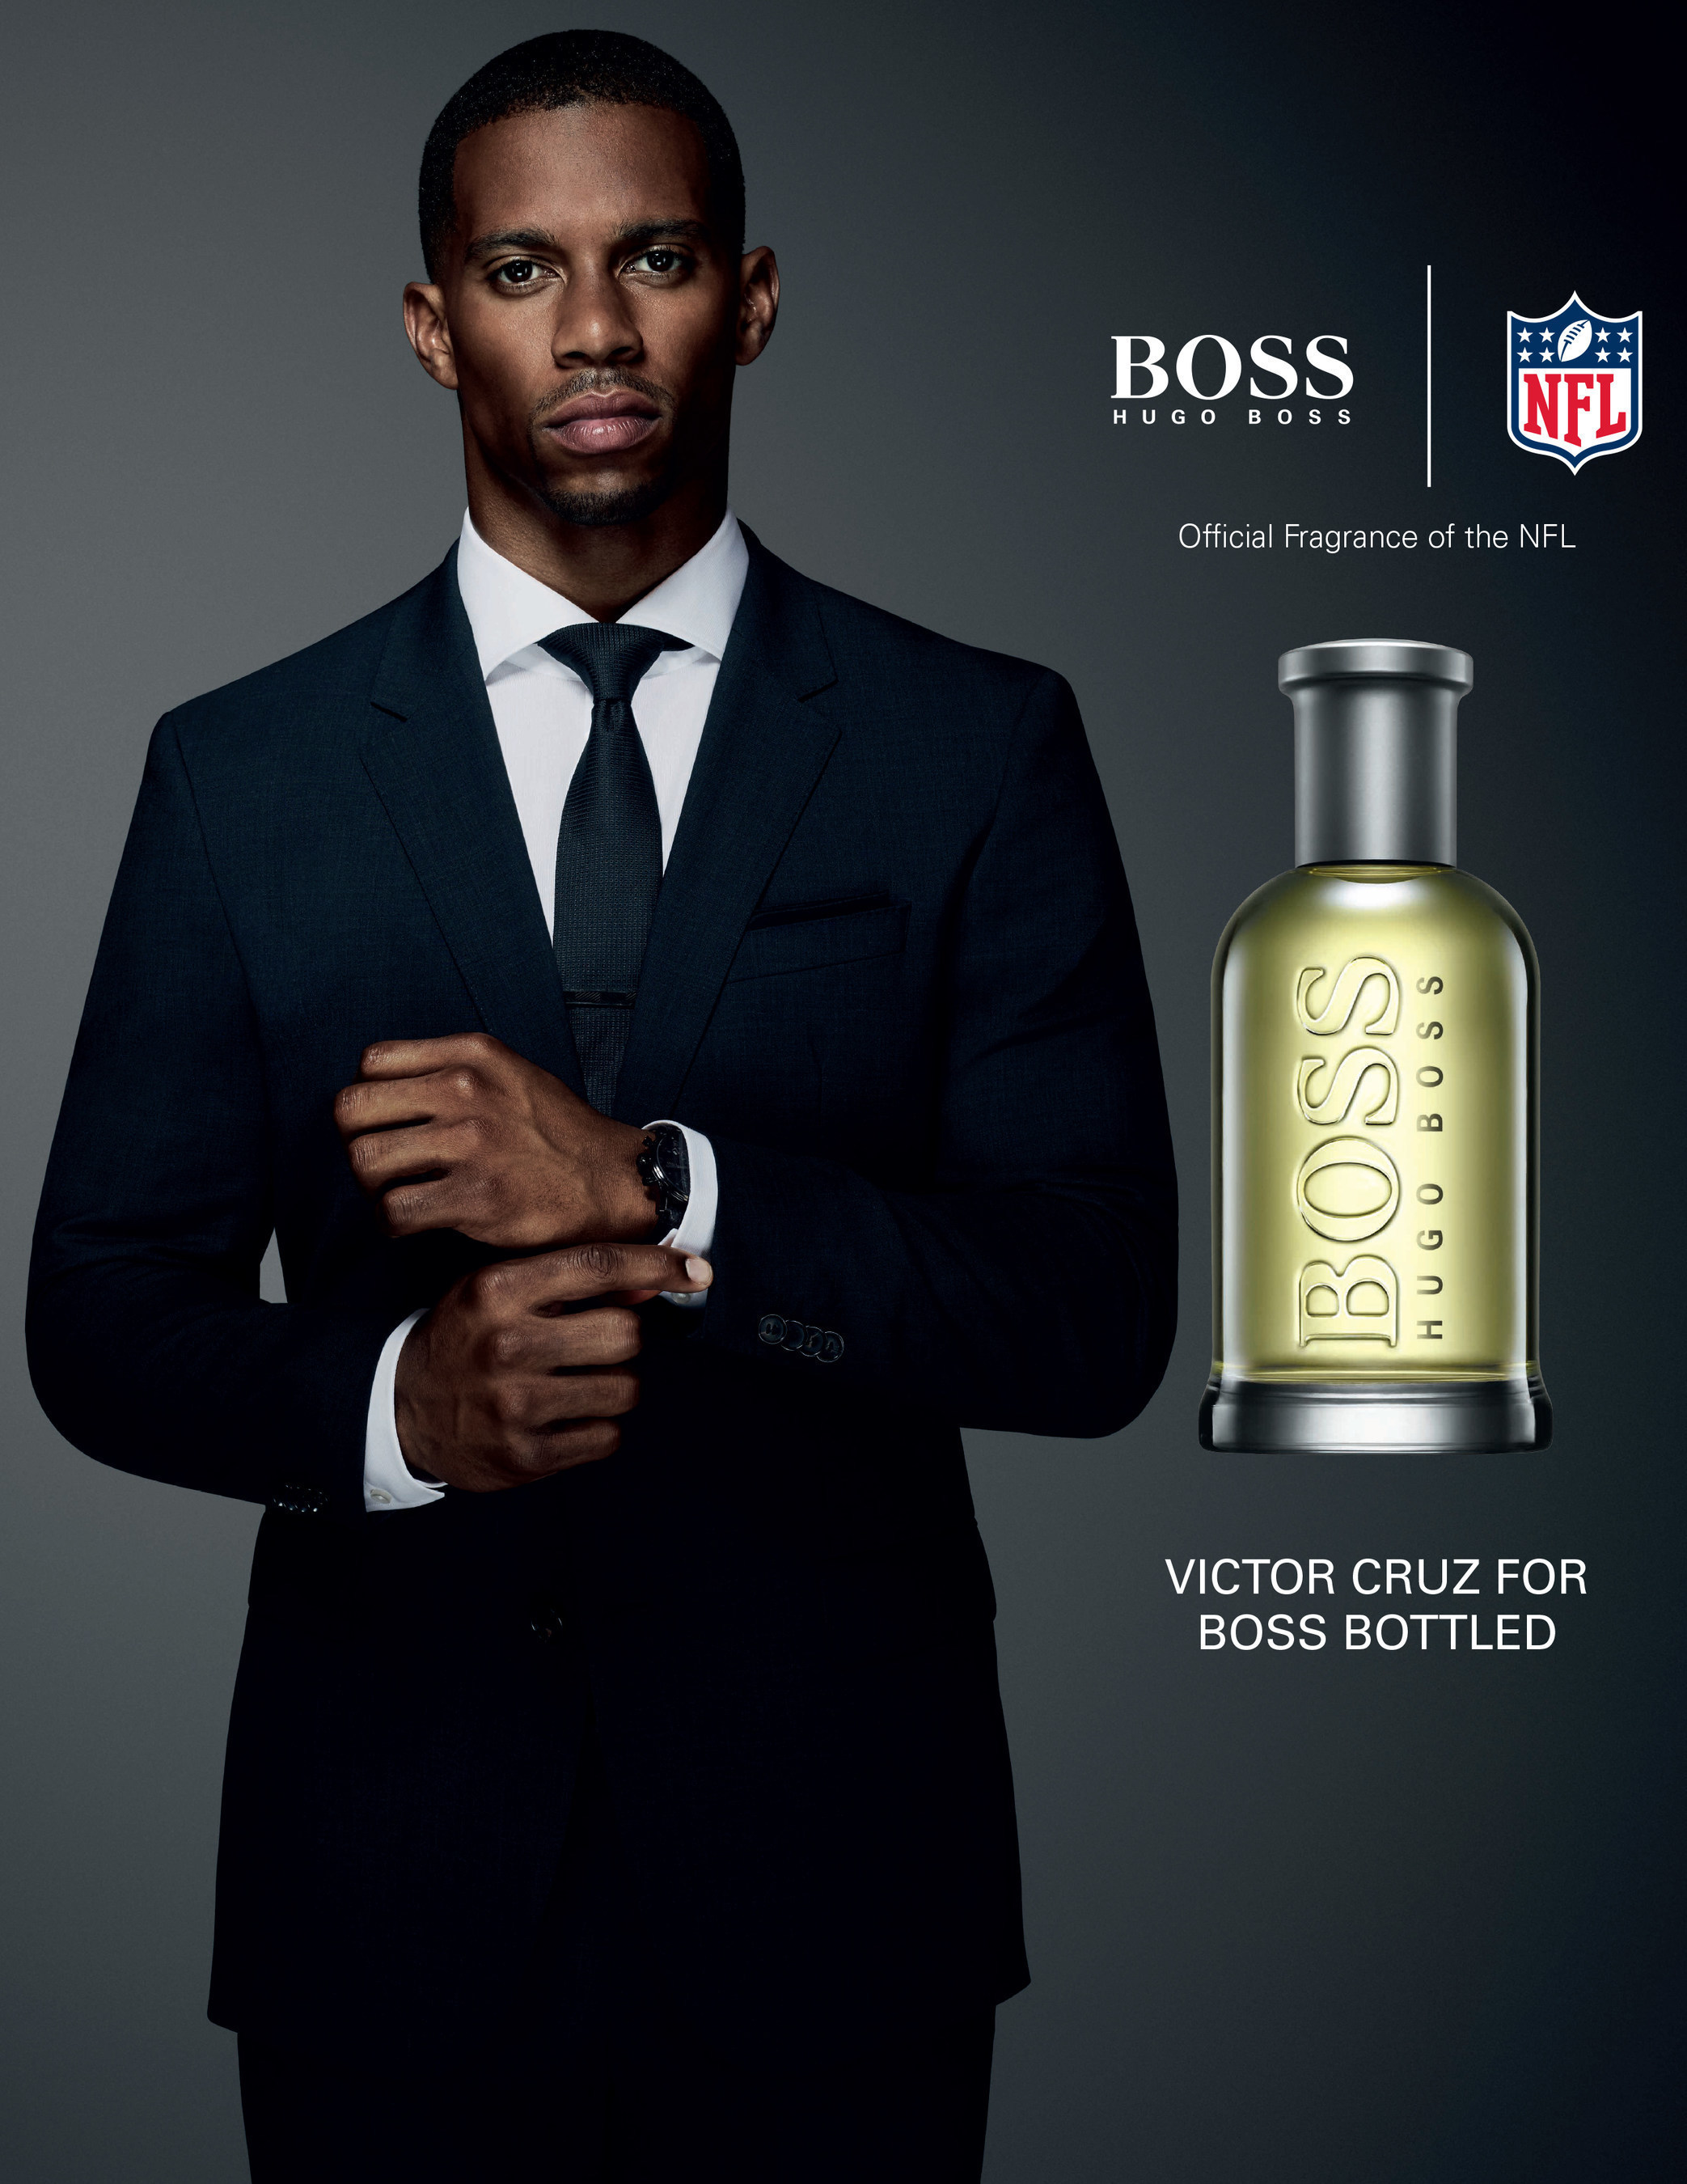 vacuüm propeller behandeling HUGO BOSS Fragrances 2015 "Success Beyond The Game" NFL Campaign